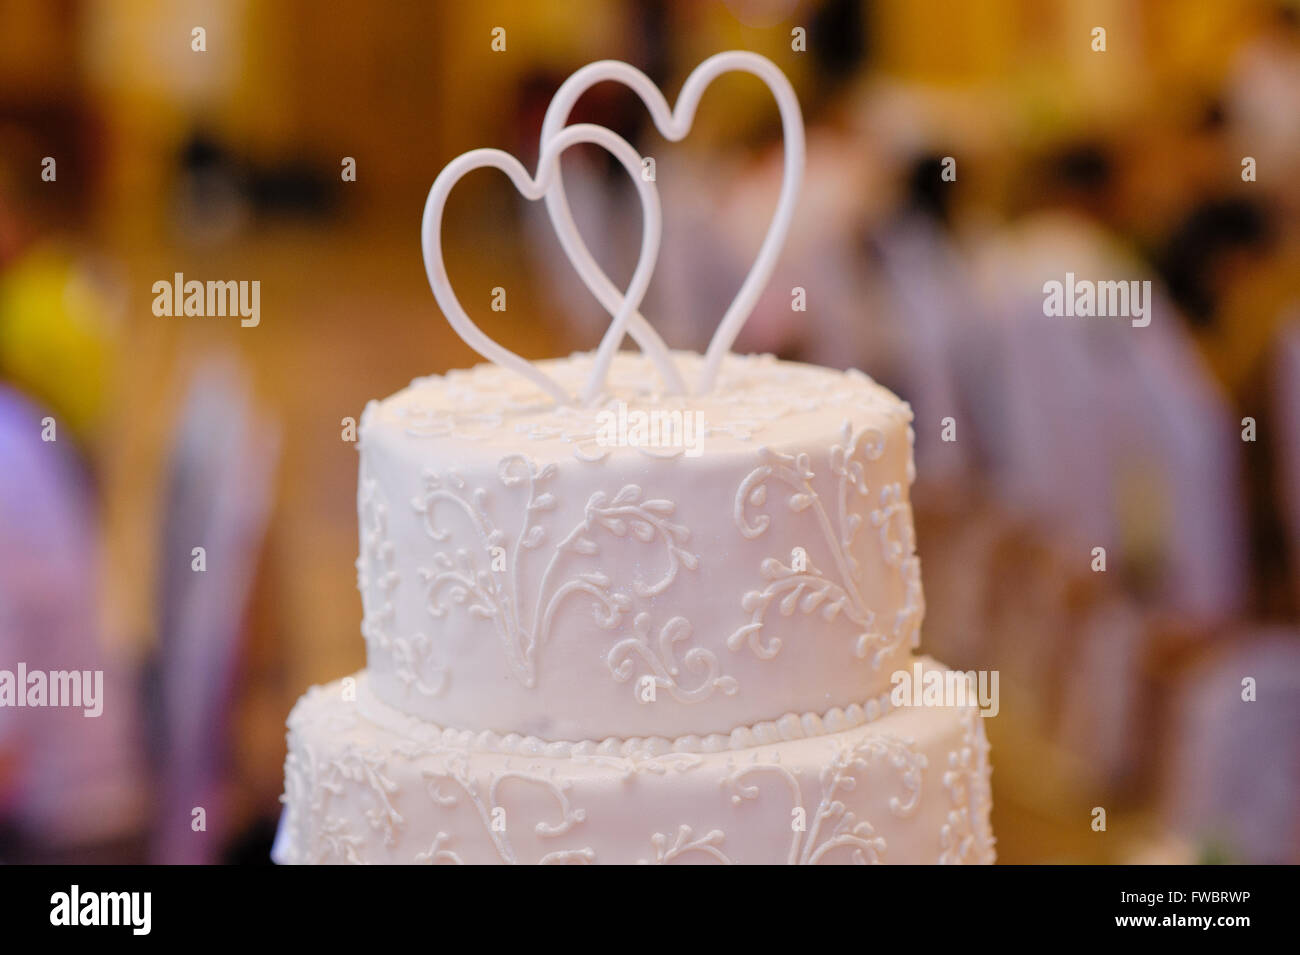 Blanc multi-niveaux gâteau de mariage avec deux cœurs au-dessus Banque D'Images